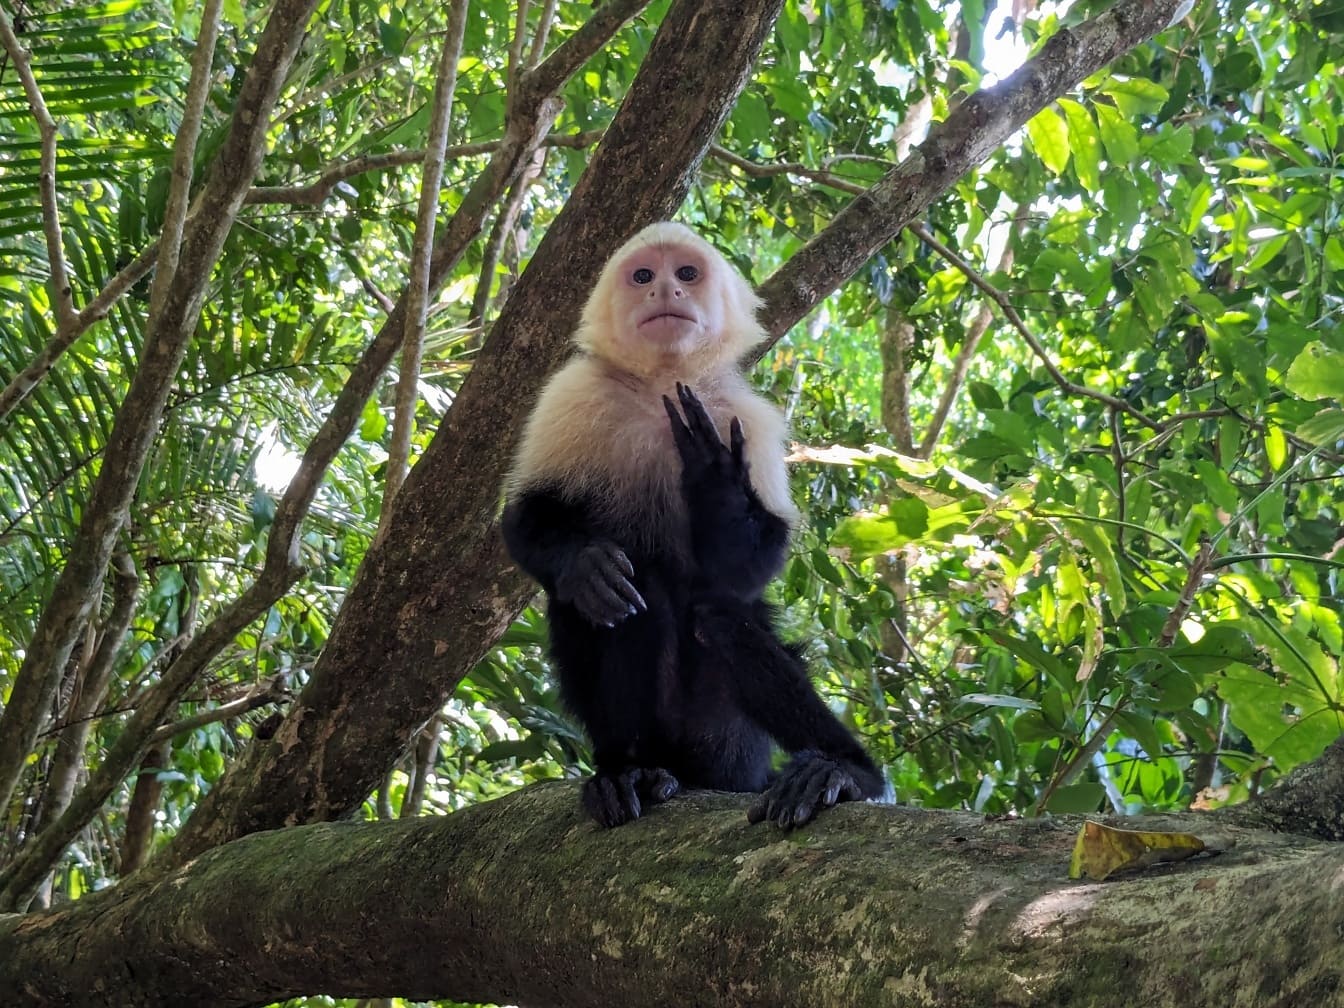 Panamaischer weißgesichtiger Kapuziner (Cebus imitator) Affe, der auf einem Ast sitzt